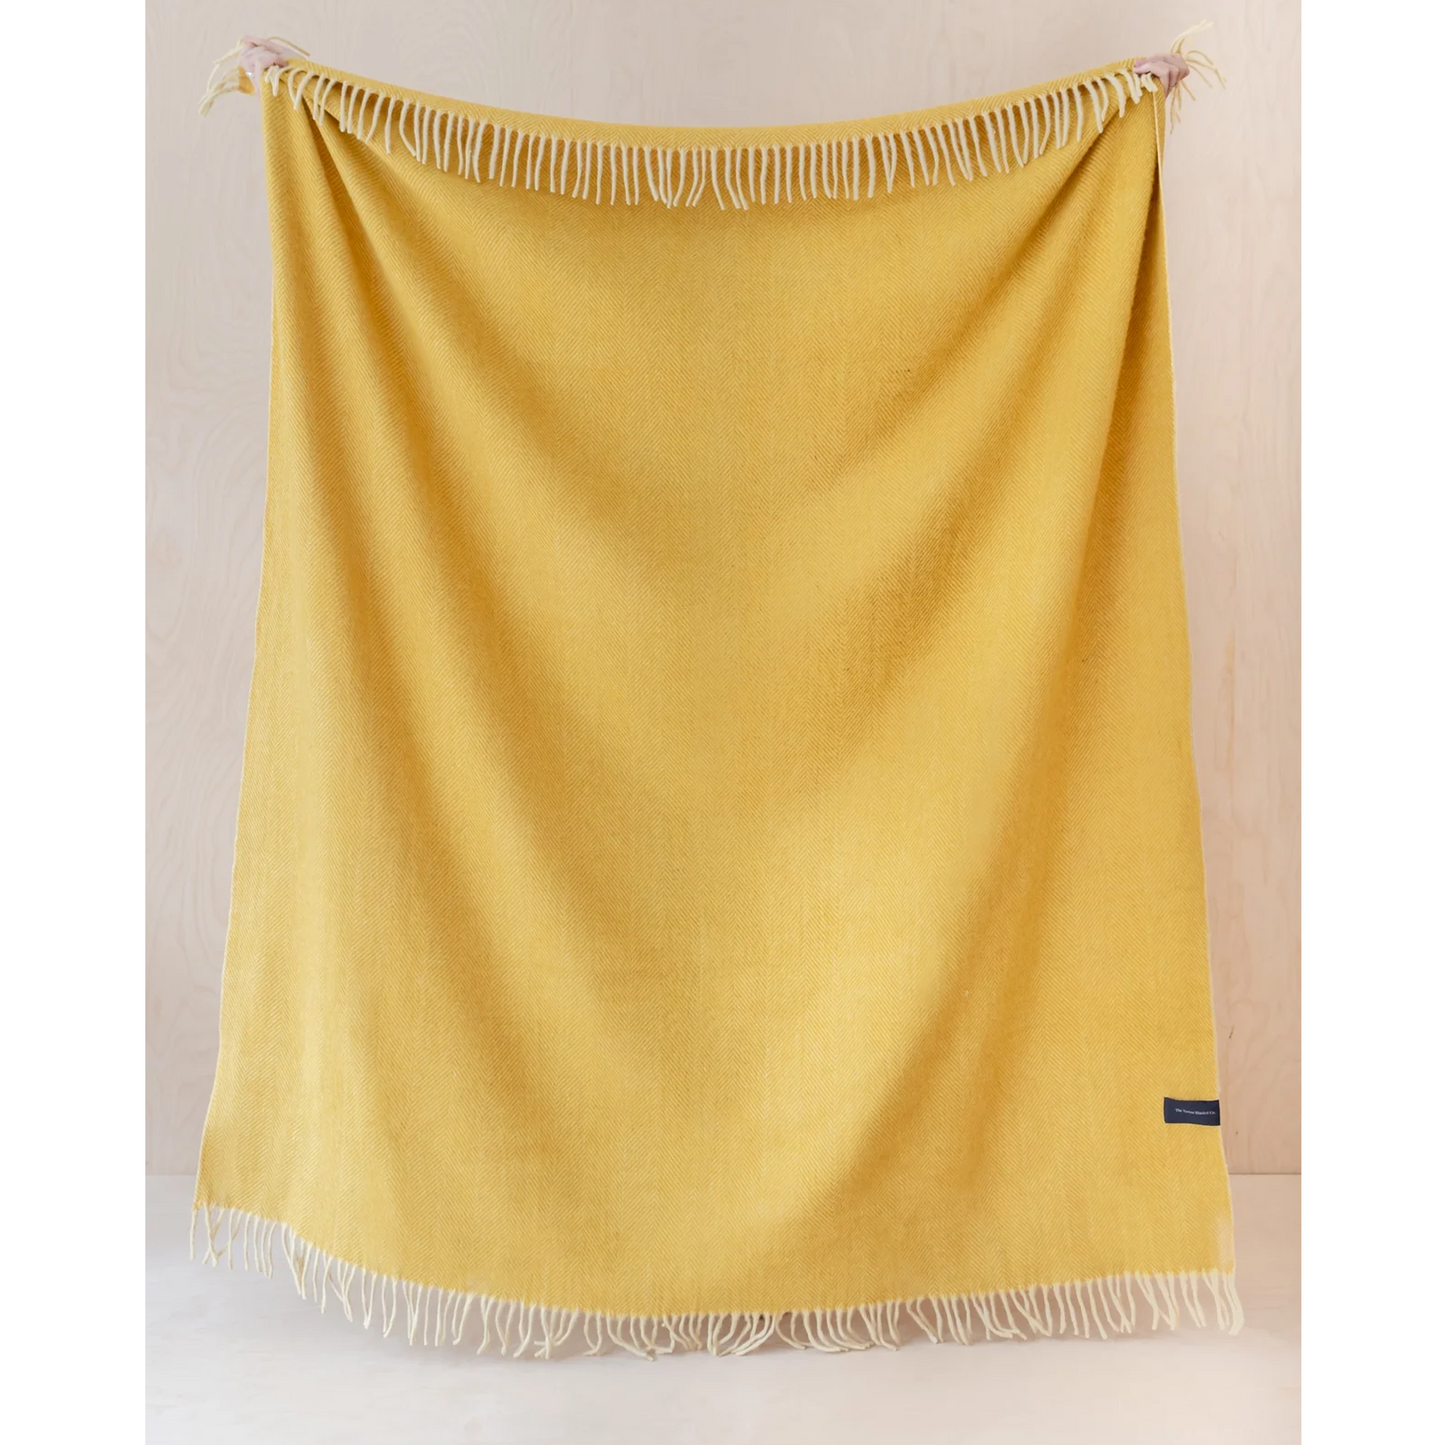 Recycled Wool Full Size Blanket in Mustard Herringbone